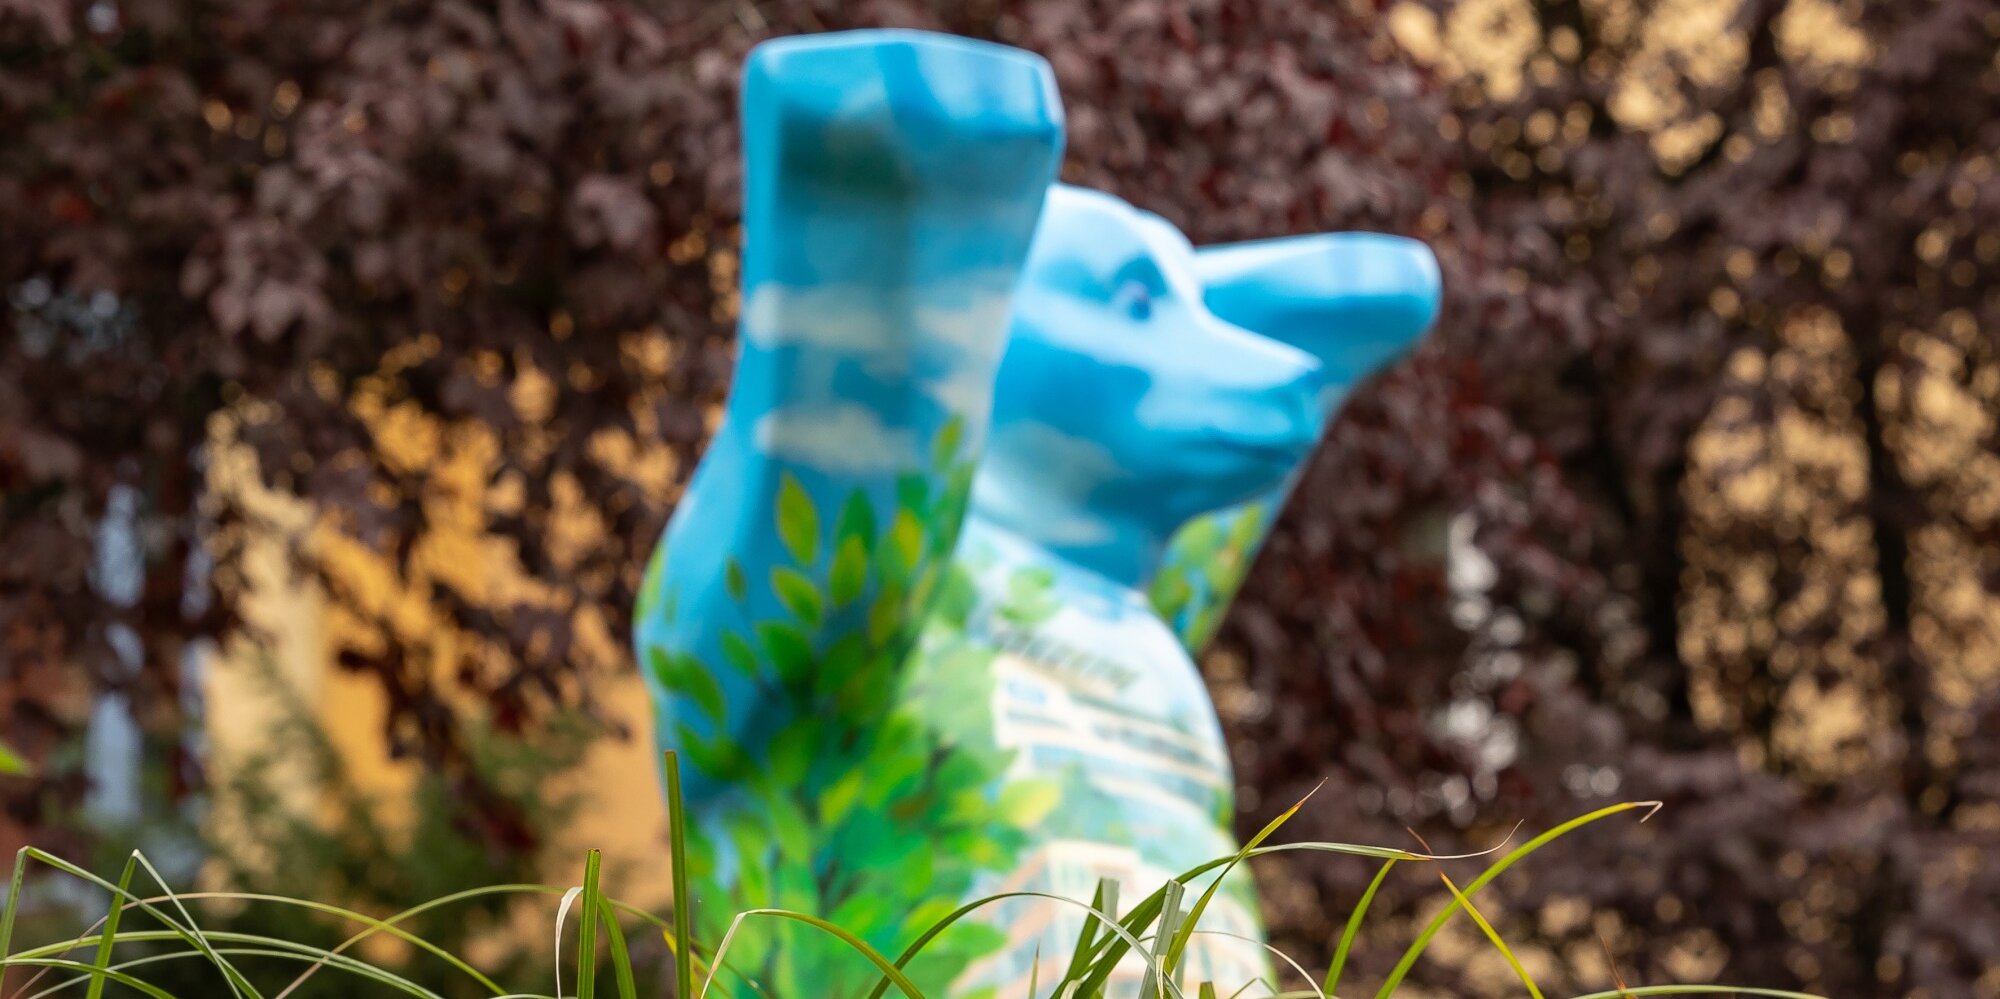 Blaue Statue in Form eines Berliner Buddy-Bären auf einer grünen Wiese.